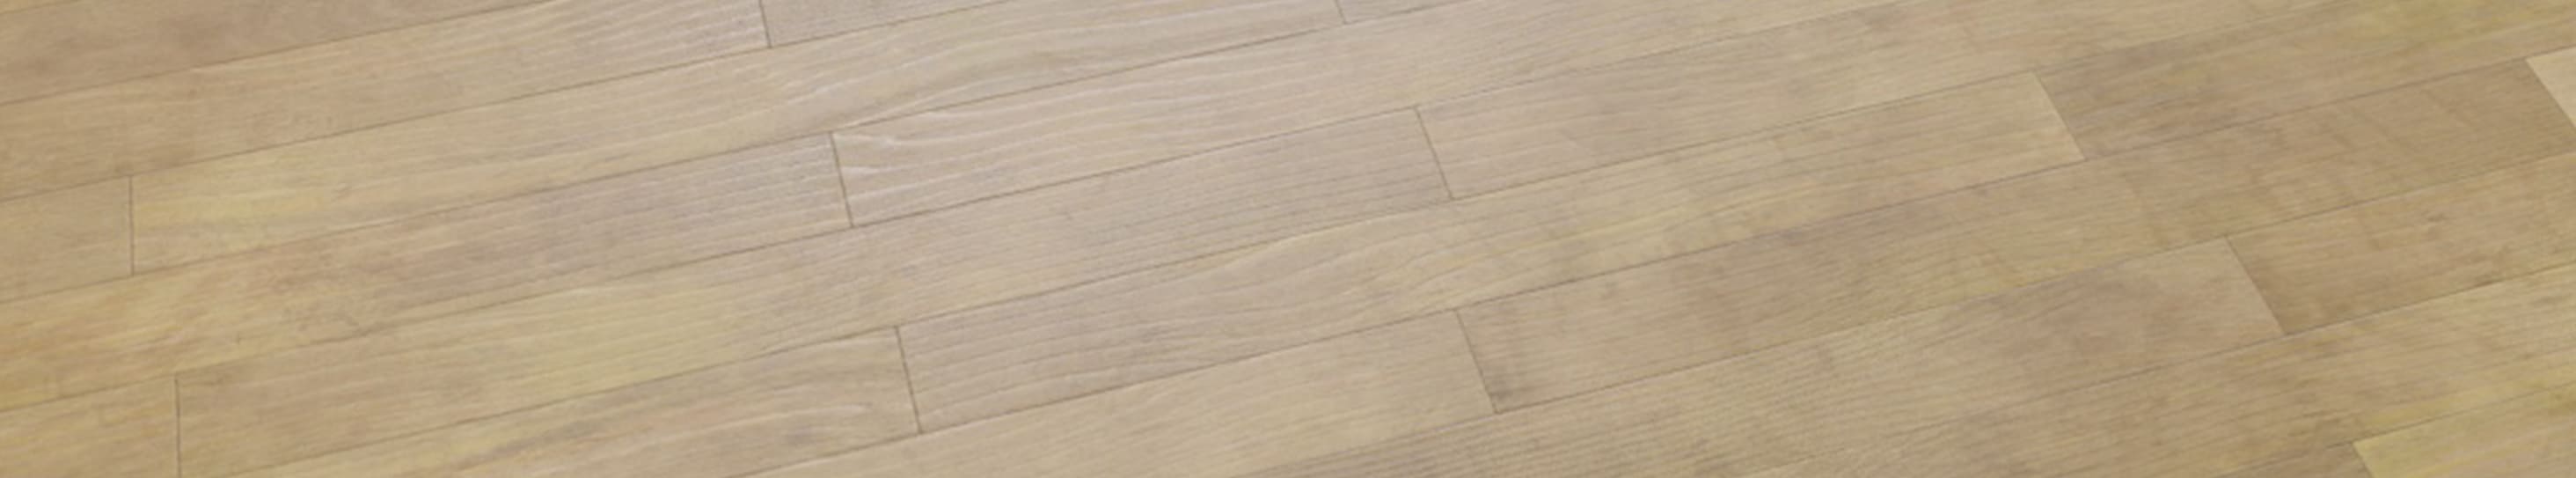 1K, 2K, 4K, 8K, 16K Wood Floor Texture